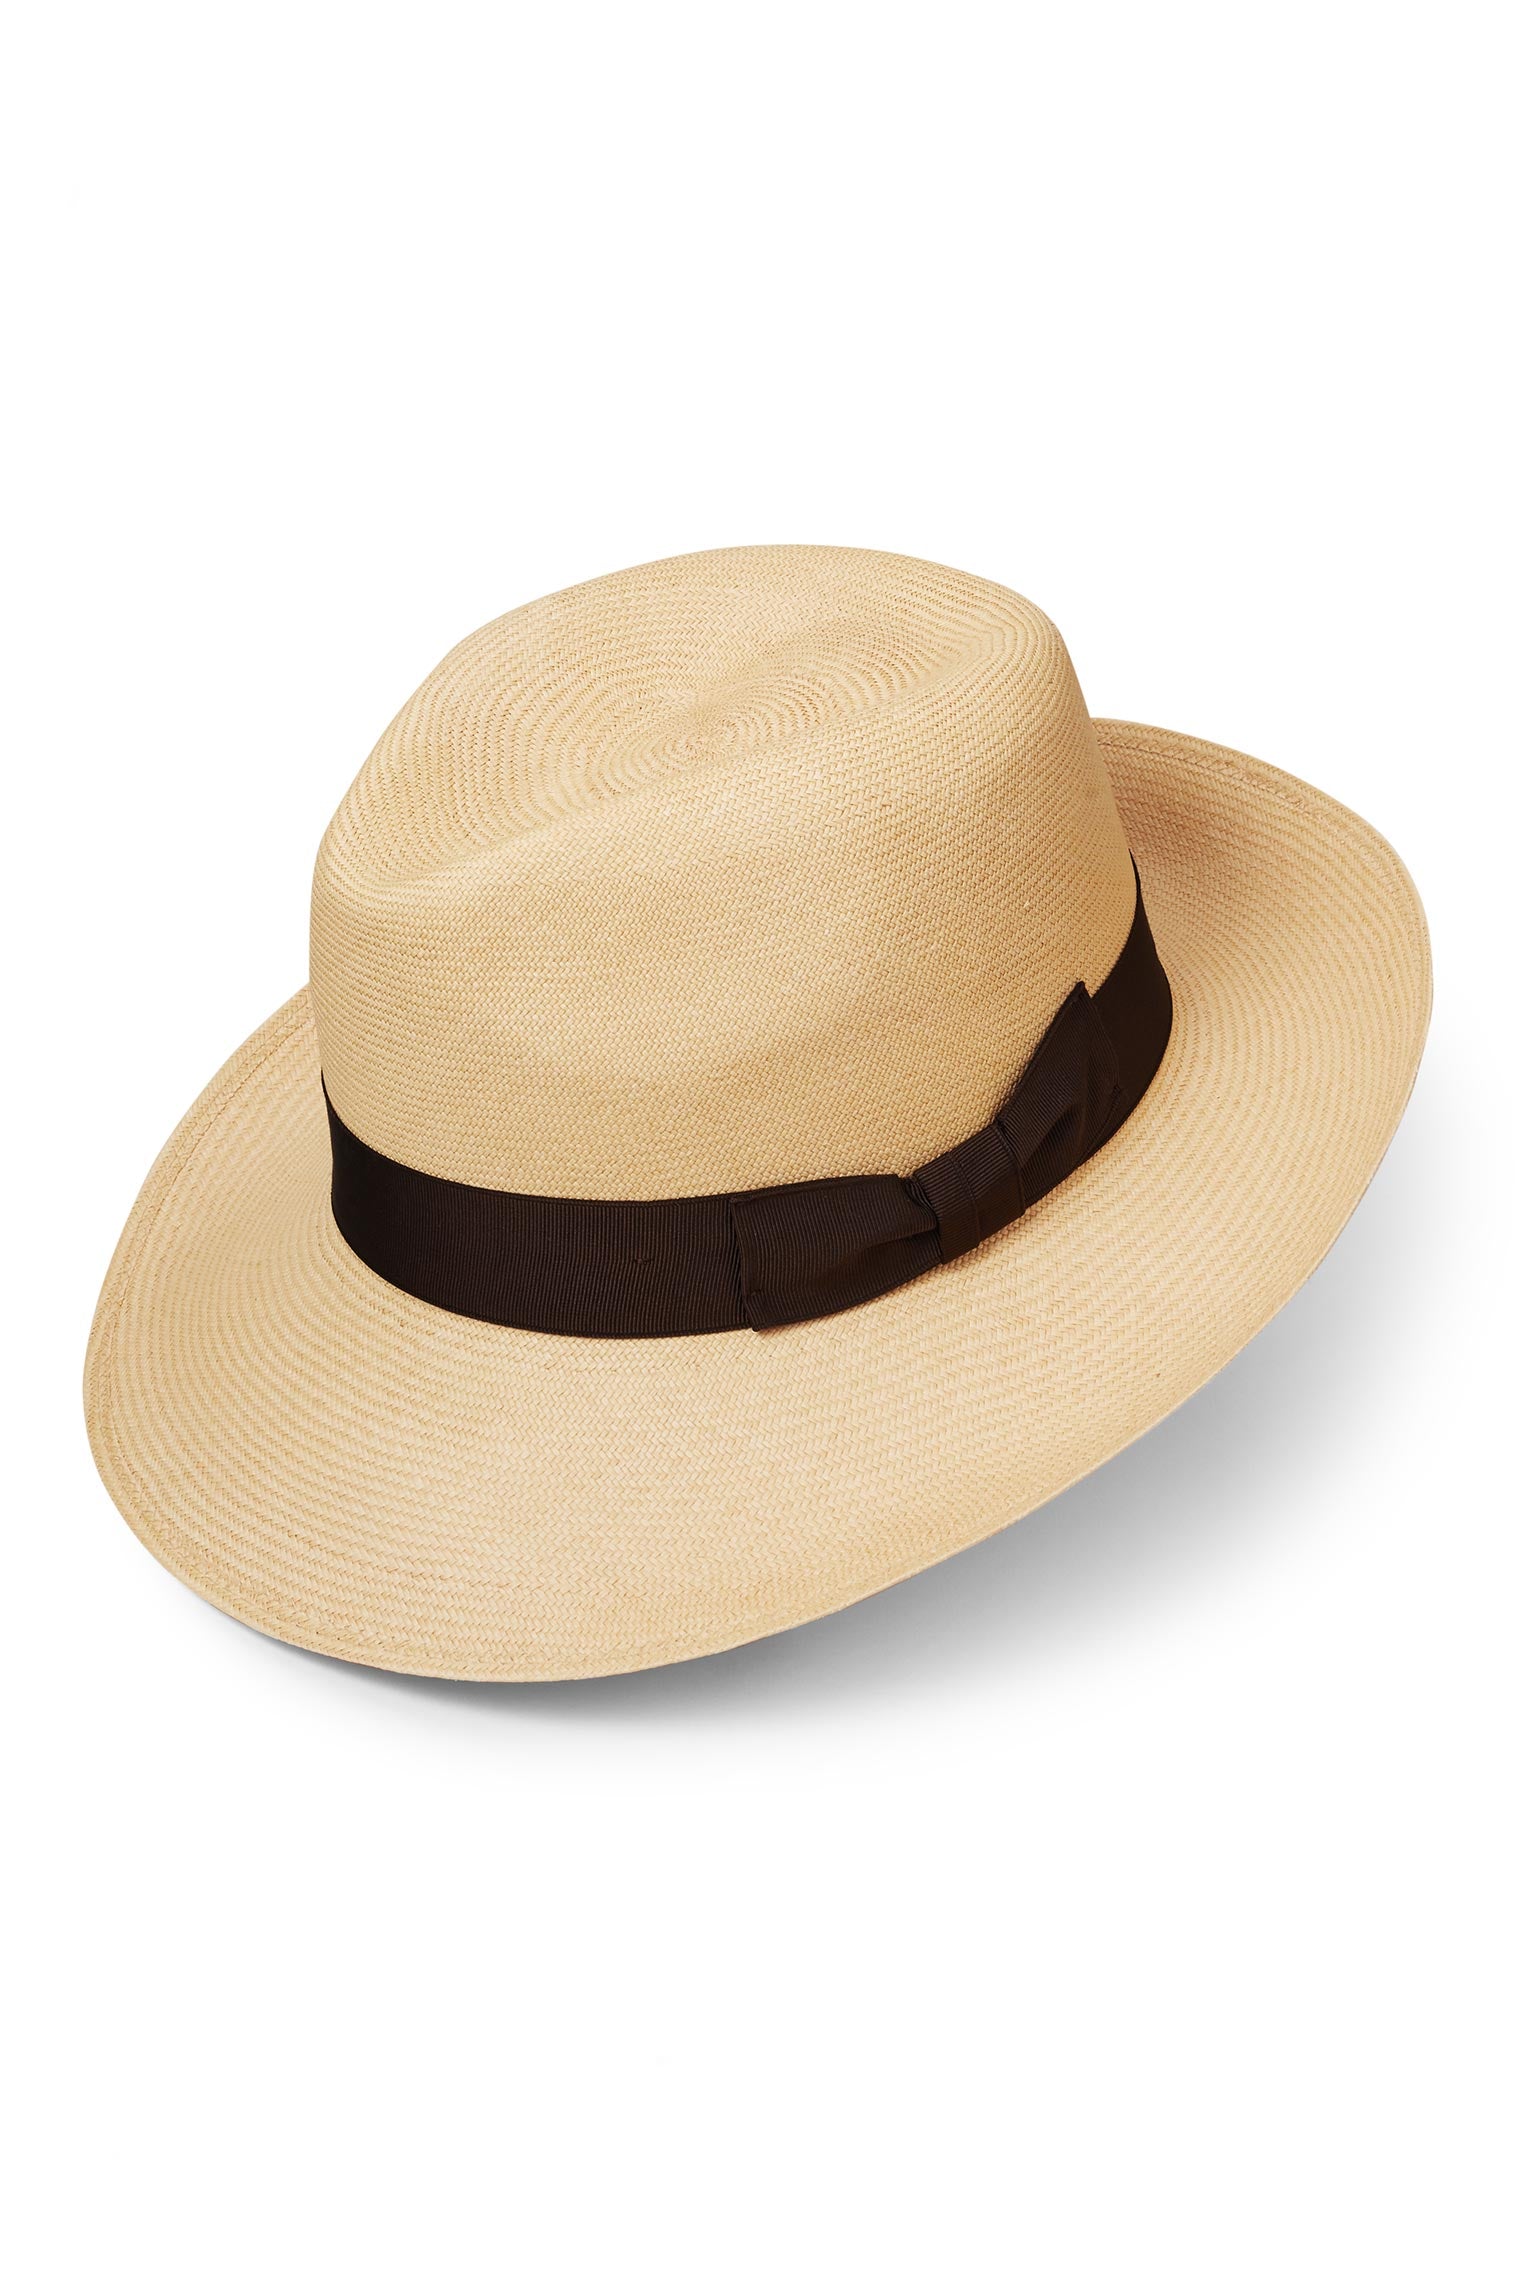 Ventnor Cuenca Ultra-fino Panama - New Season Men's Hats - Lock & Co. Hatters London UK